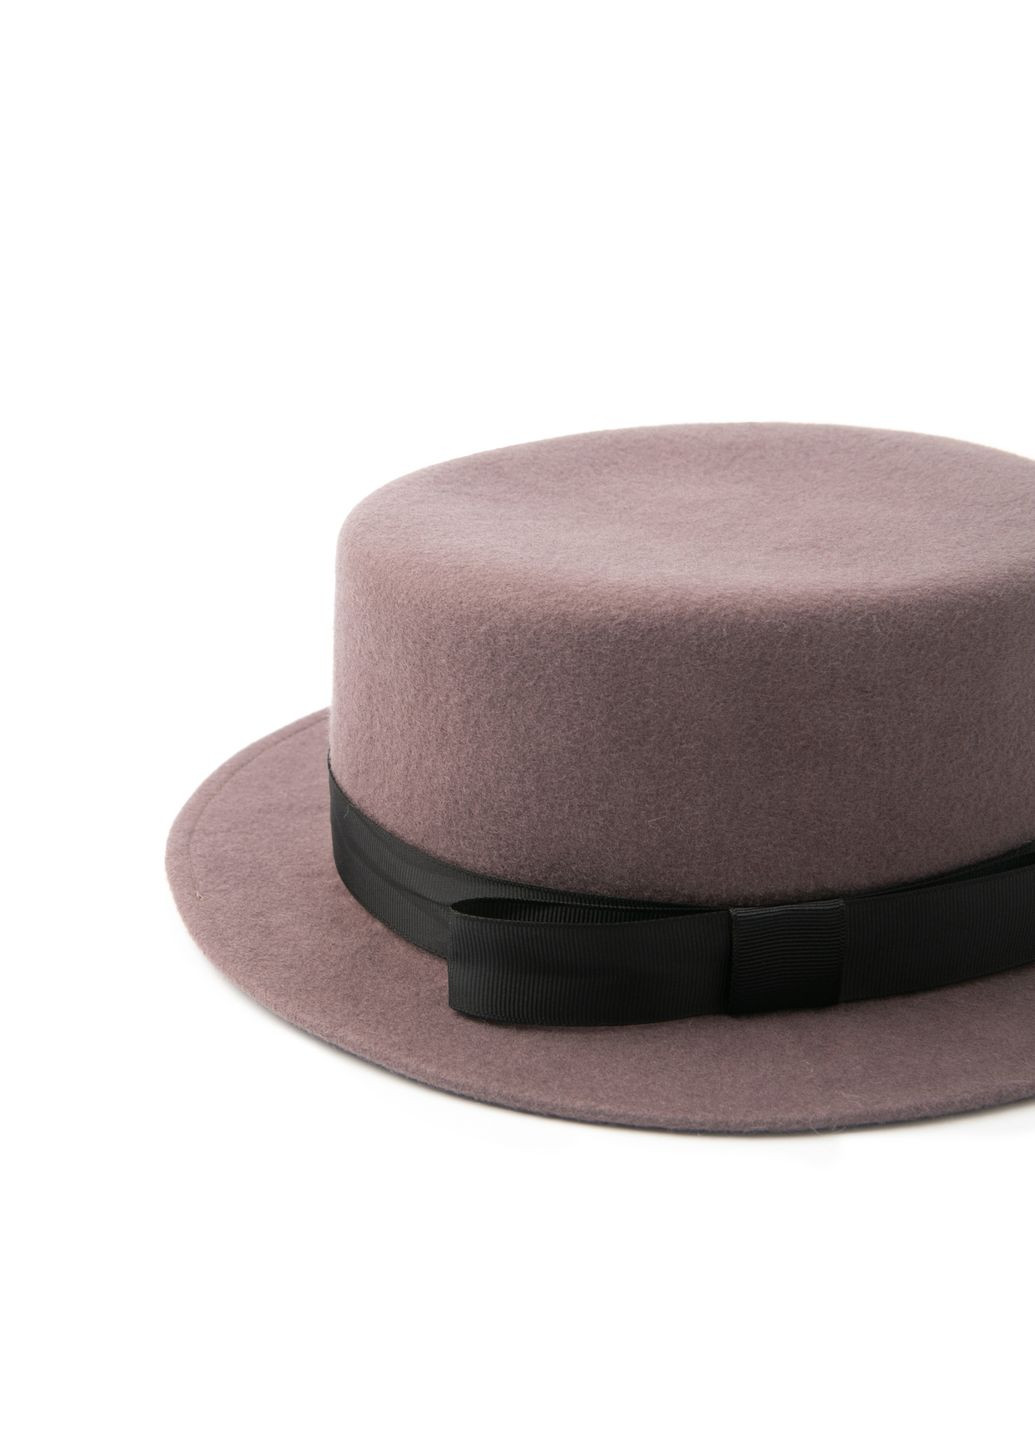 Шляпа канотье женская с лентой фетр розовая LuckyLOOK 928-680 (289478349)